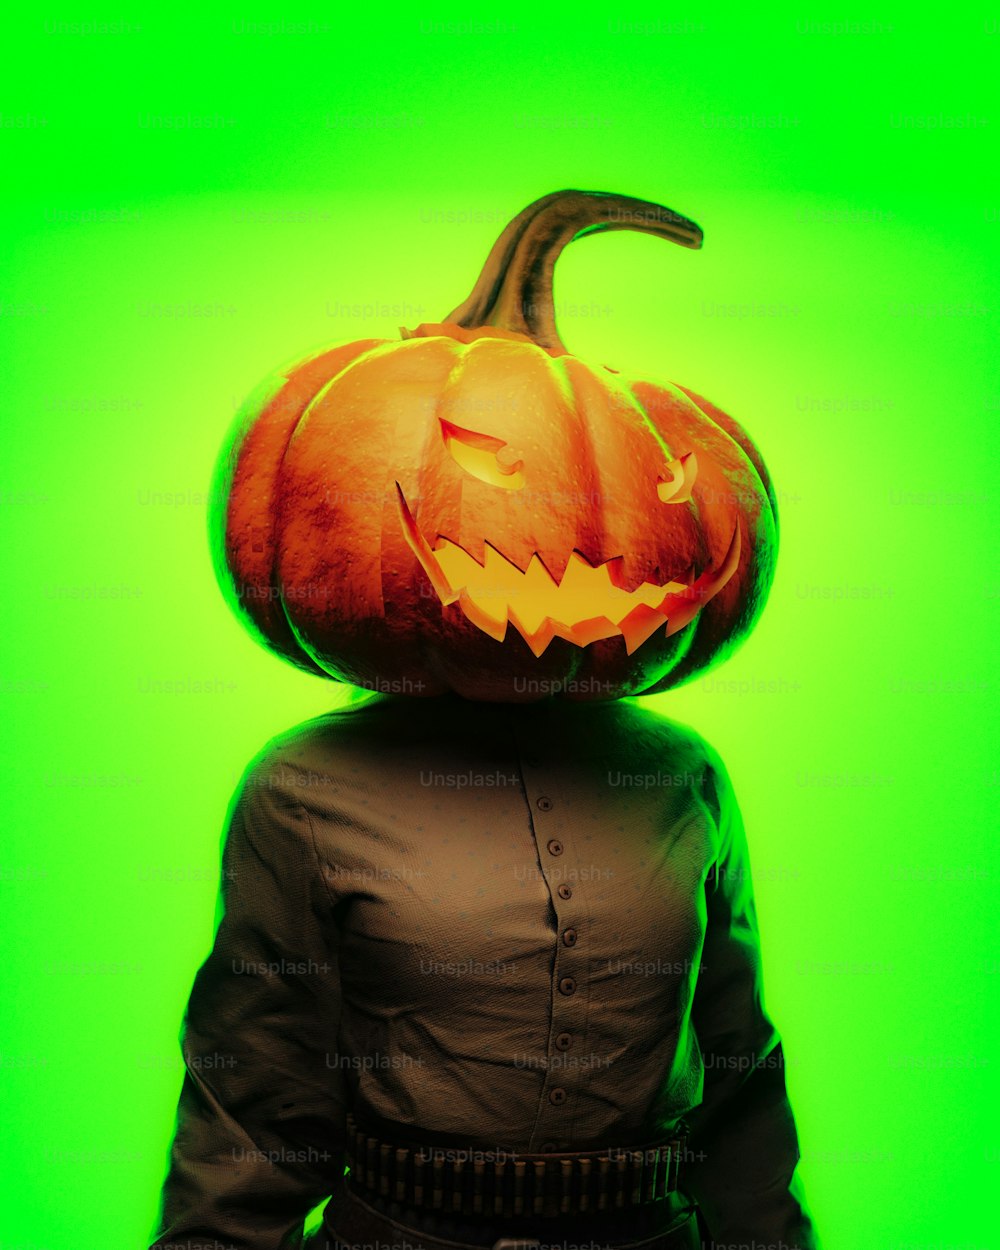 a person wearing a pumpkin head on their head